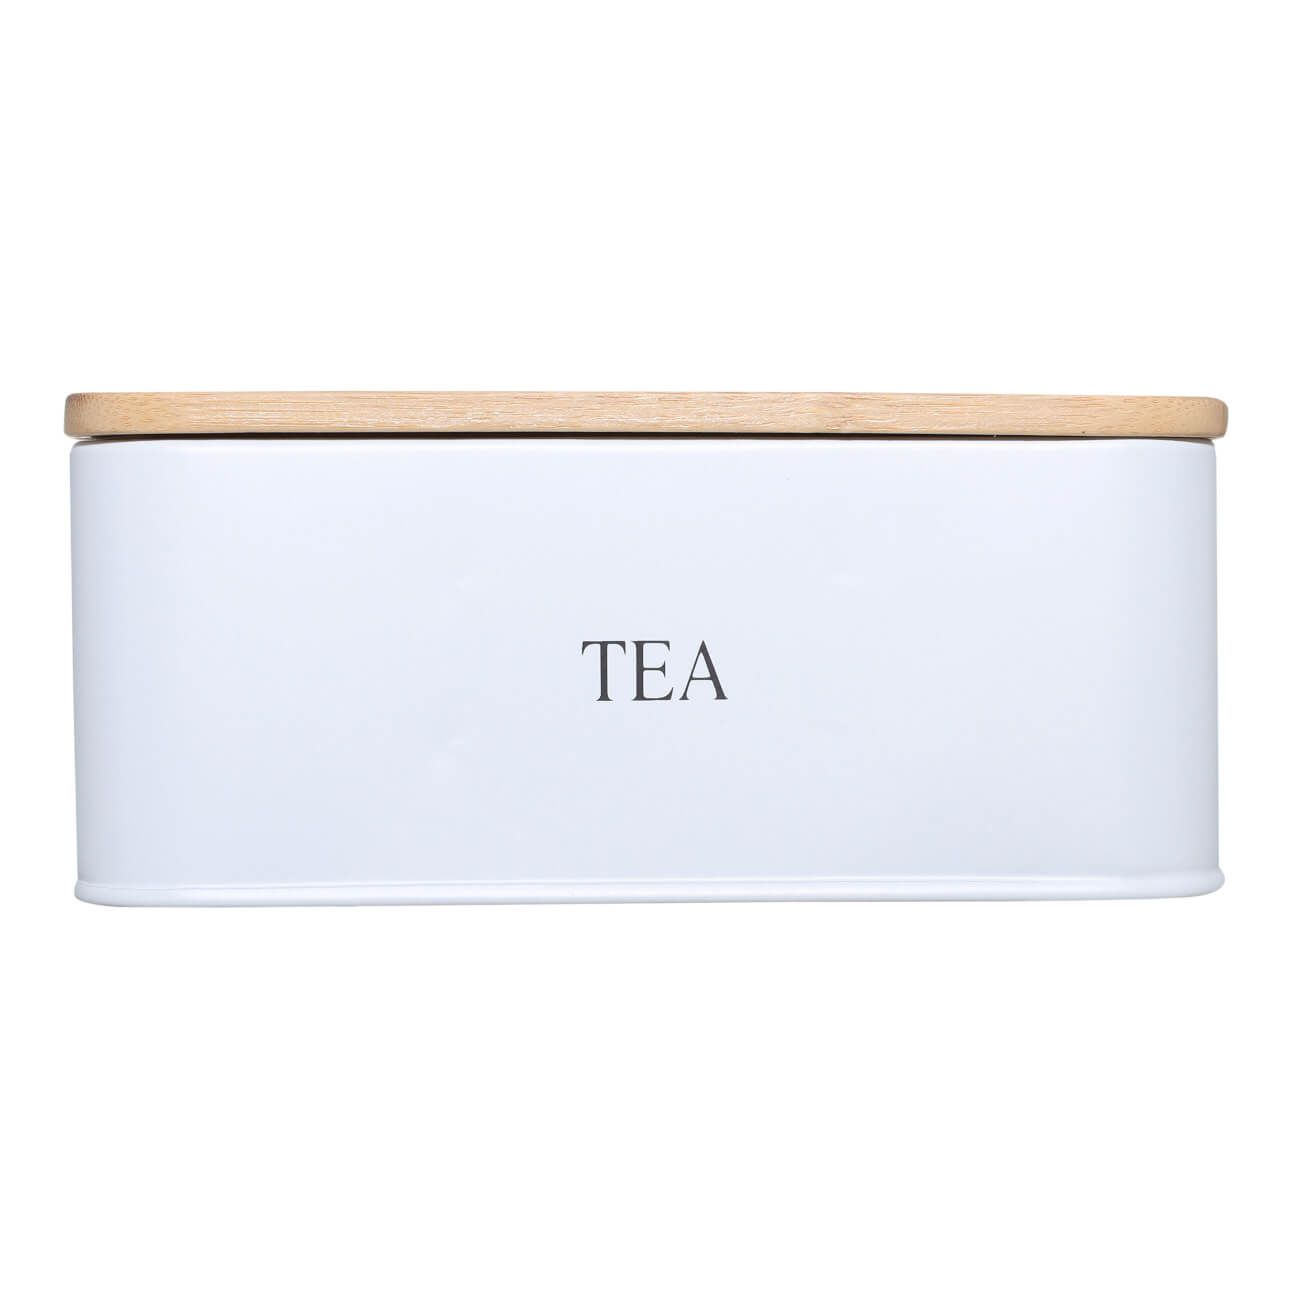 Коробка для чая, 18х15 см, 6 отд, сталь/бамбук, прямоугольная, белая, Nostalgia изображение № 1